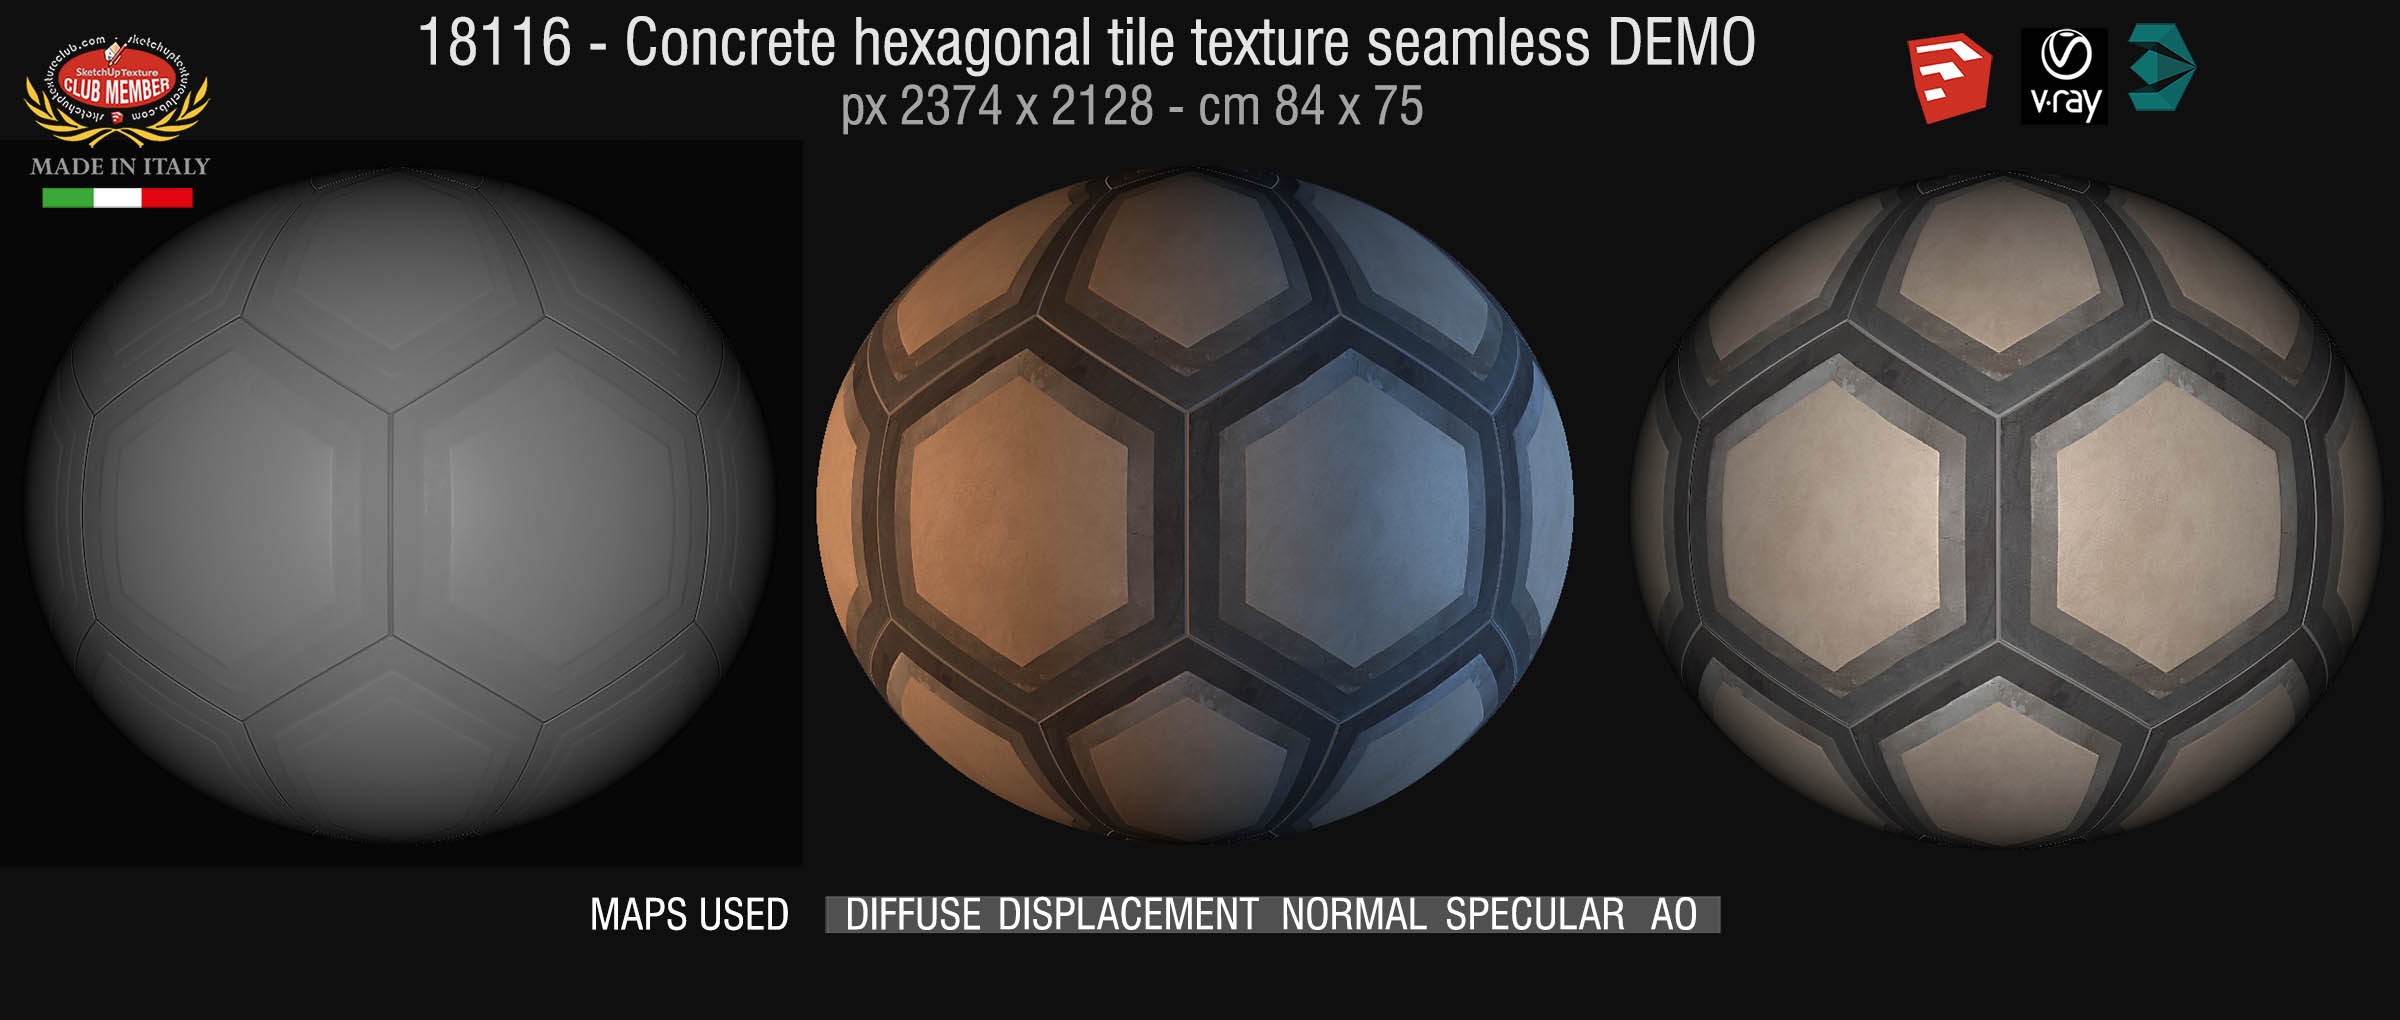 18116 Concrete hexagonal tile texture seamless + maps DEMO